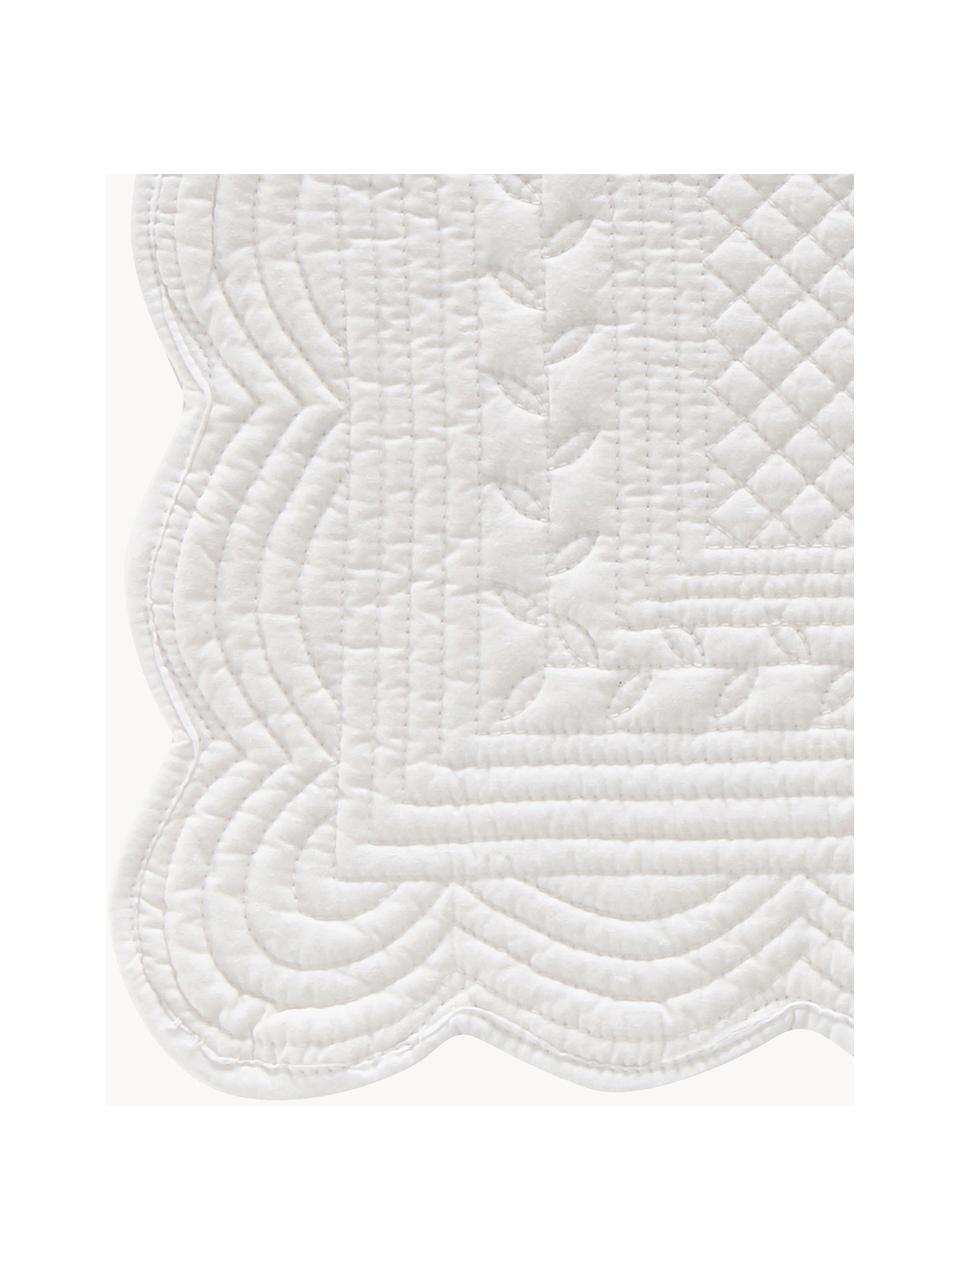 Tischsets Boutis, 2 Stück, 100 % Baumwolle, Weiß, B 34 x L 48 cm